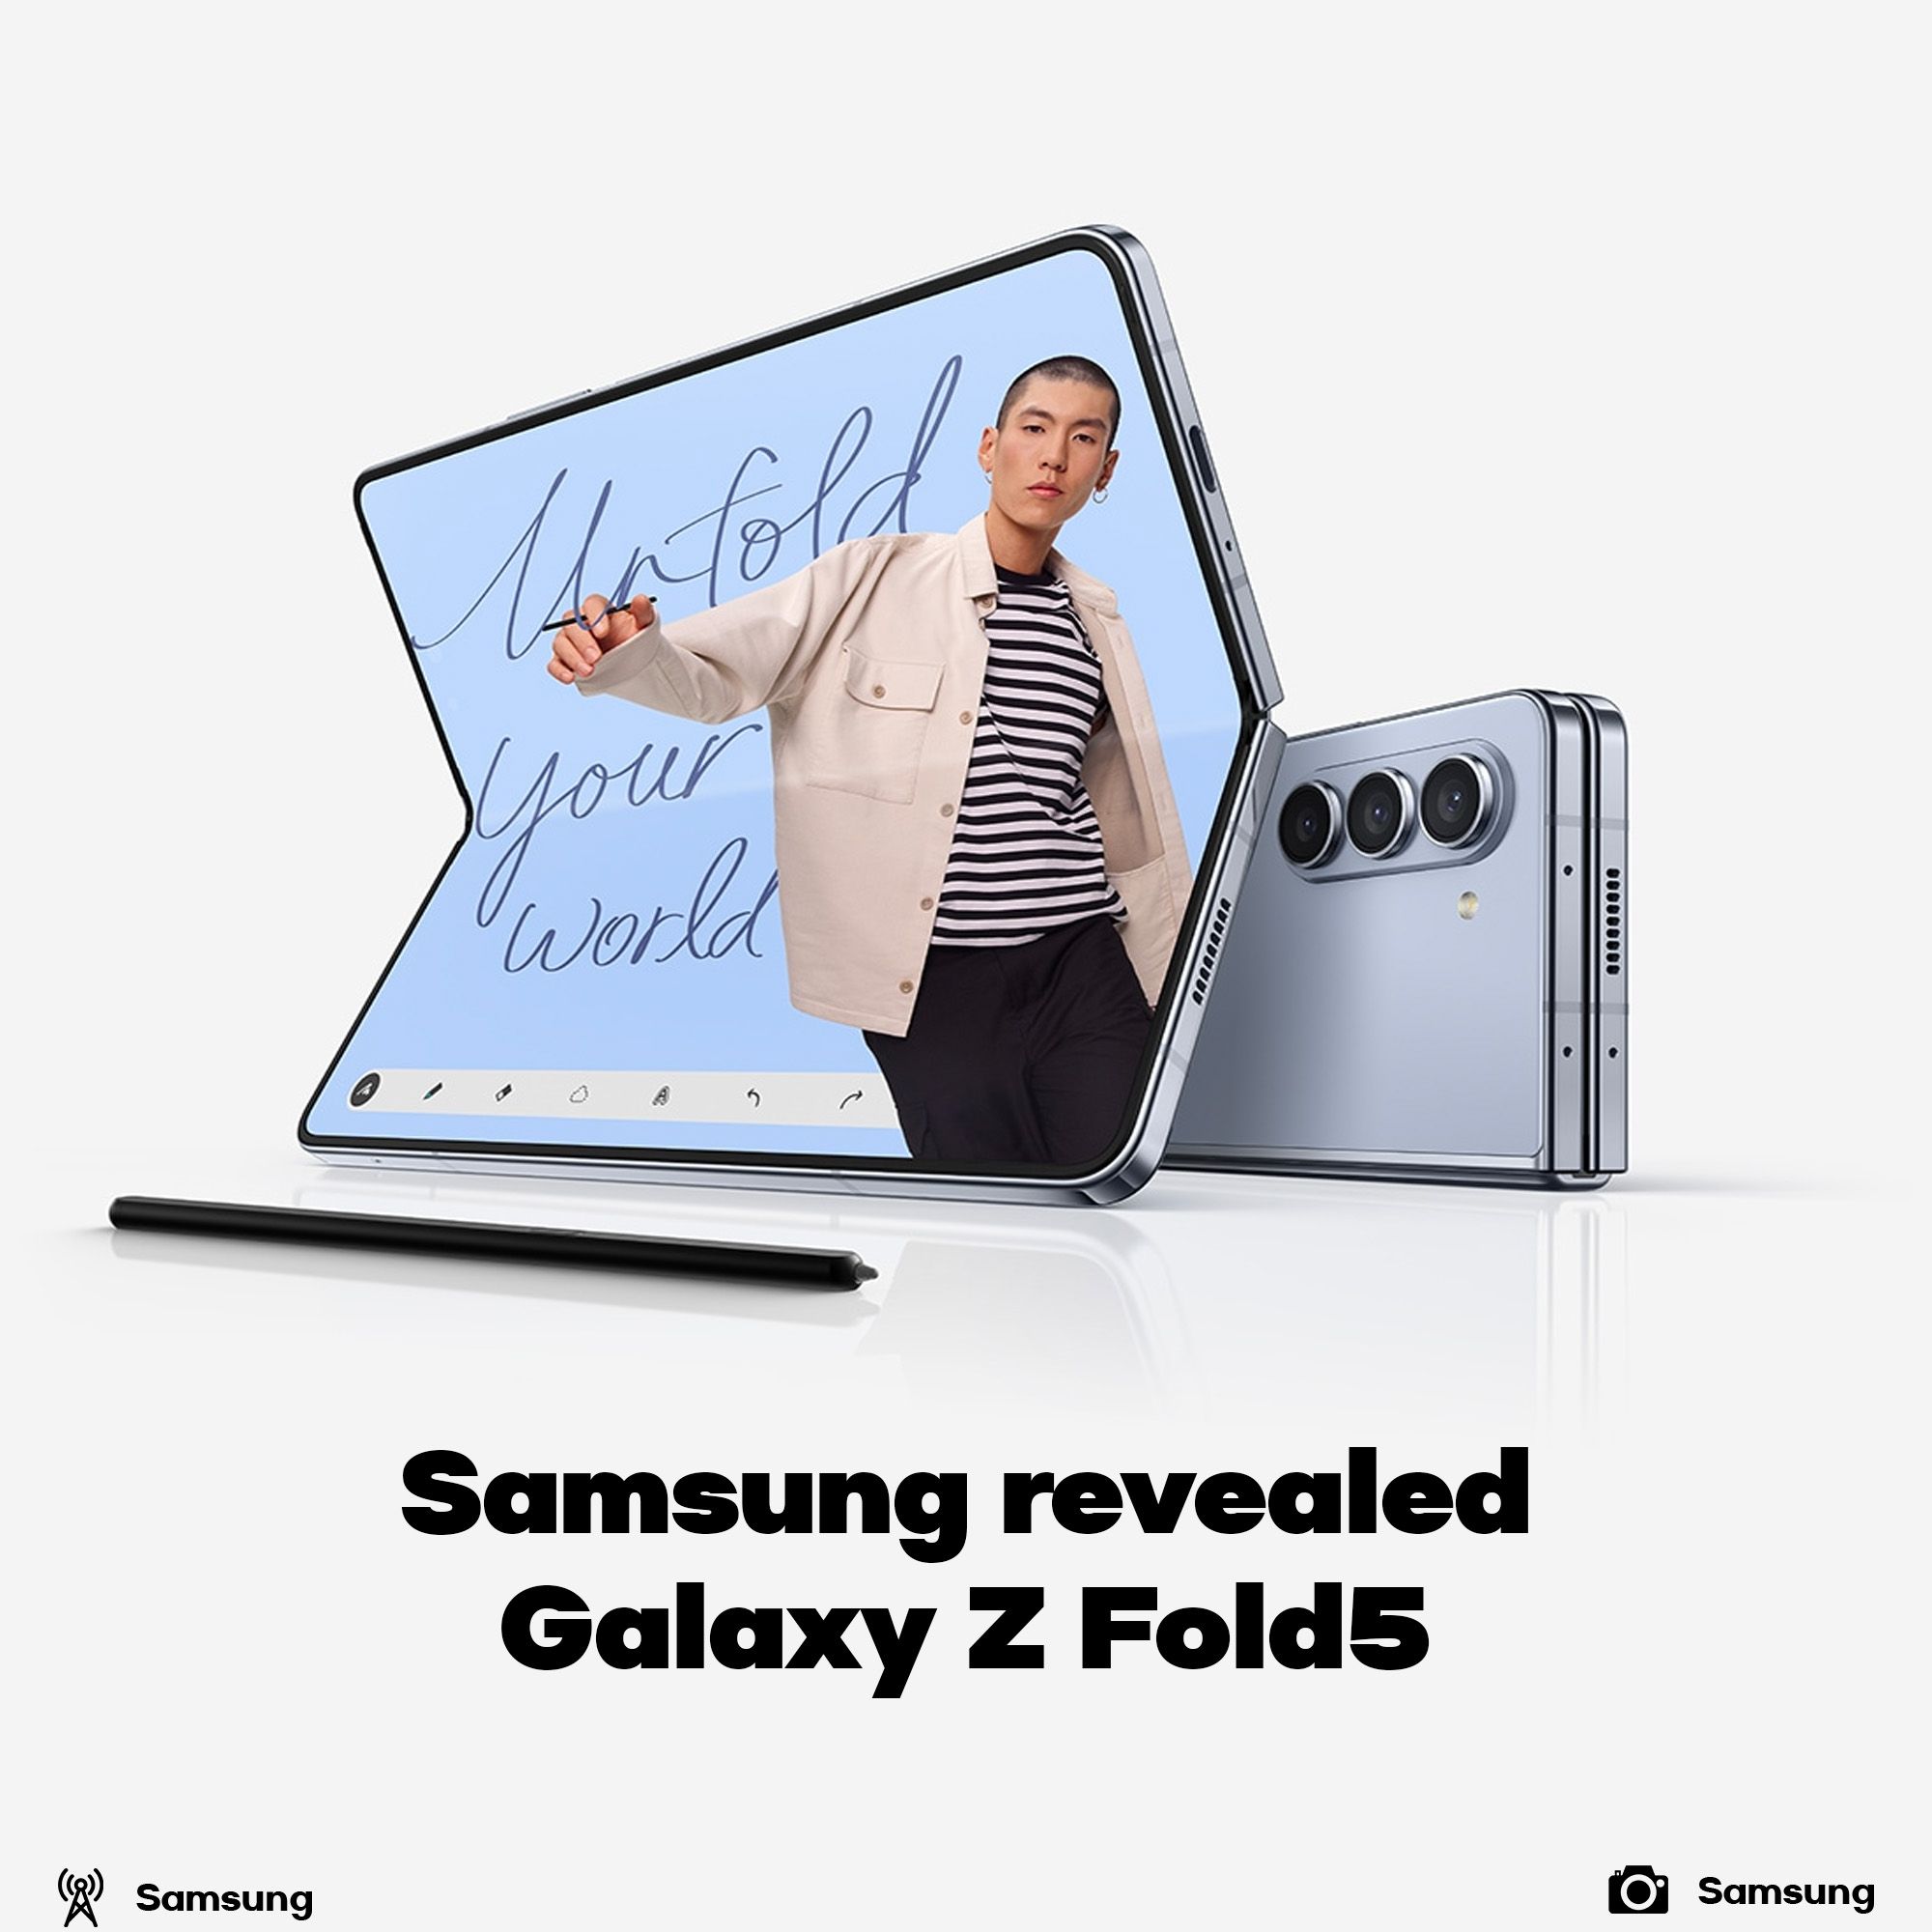 Samsung Galaxy Z Fold5 revealed